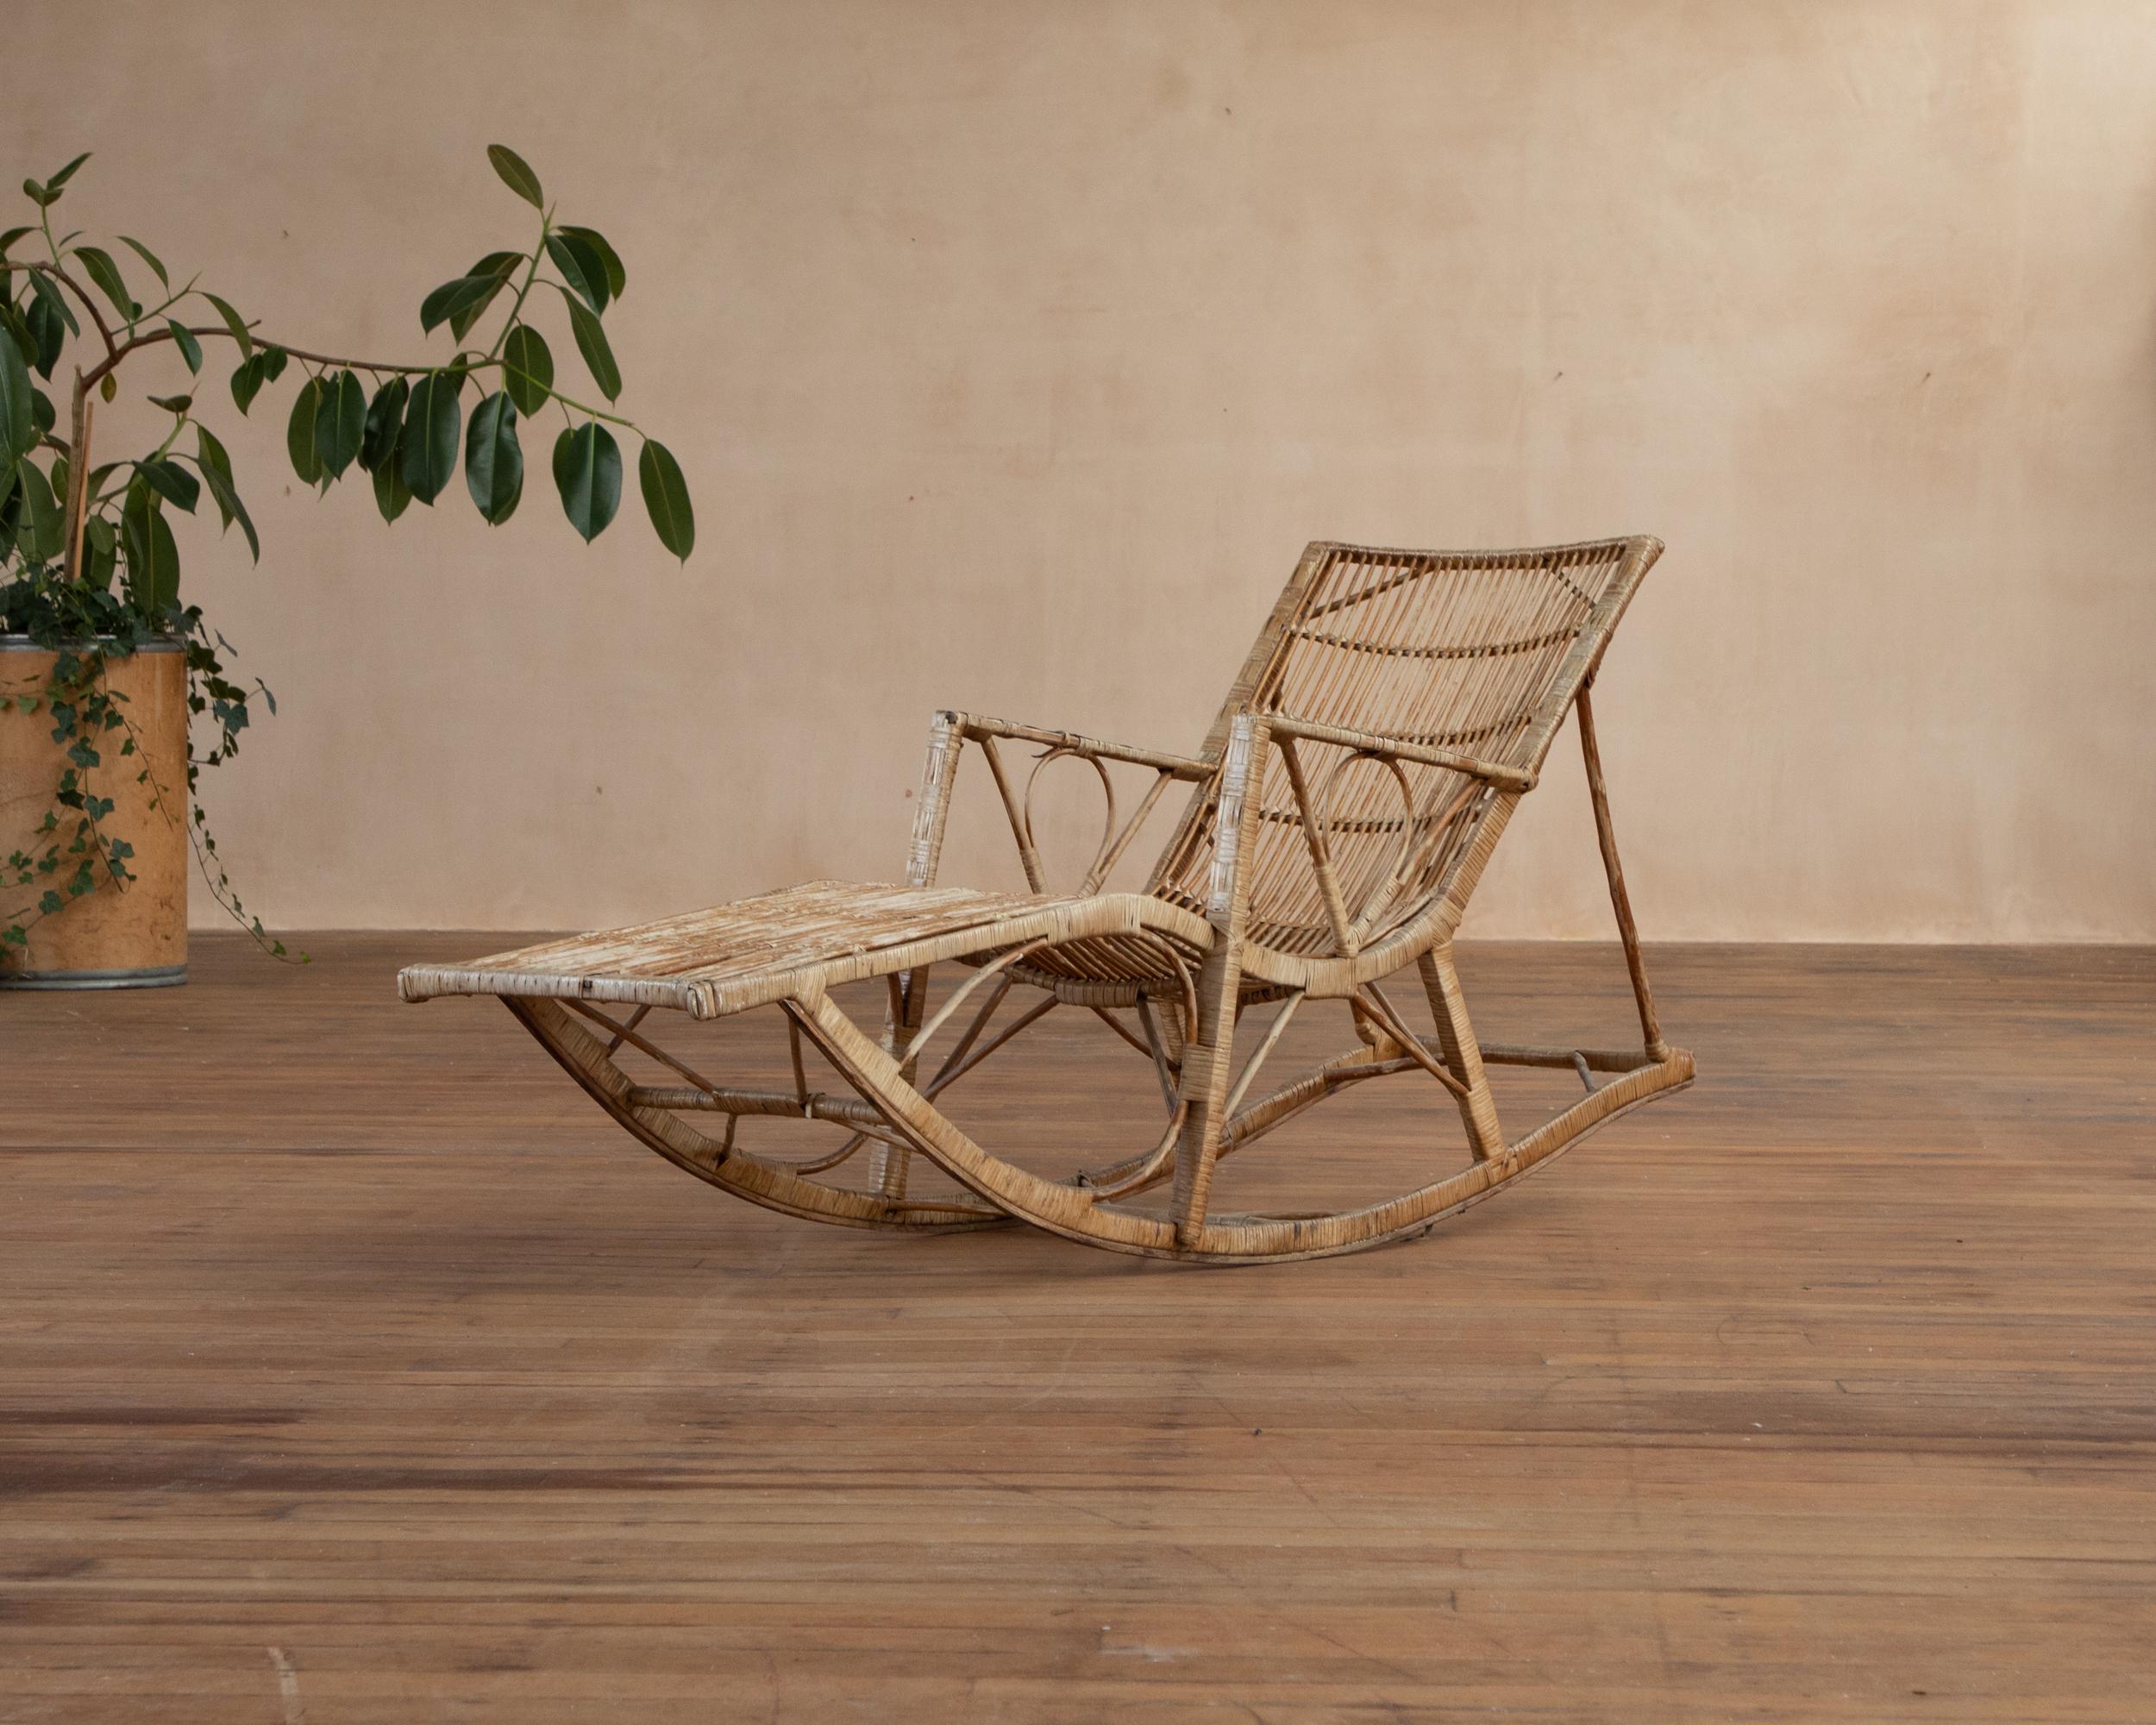 La chaise longue en bambou de 920. Bras de style vapeur avec mouvement de bascule. Le cadre reste solide. 
La finition du bambou est usée par endroits, principalement sur l'assise et les accoudoirs. Voir les photos 
car ils font partie de la